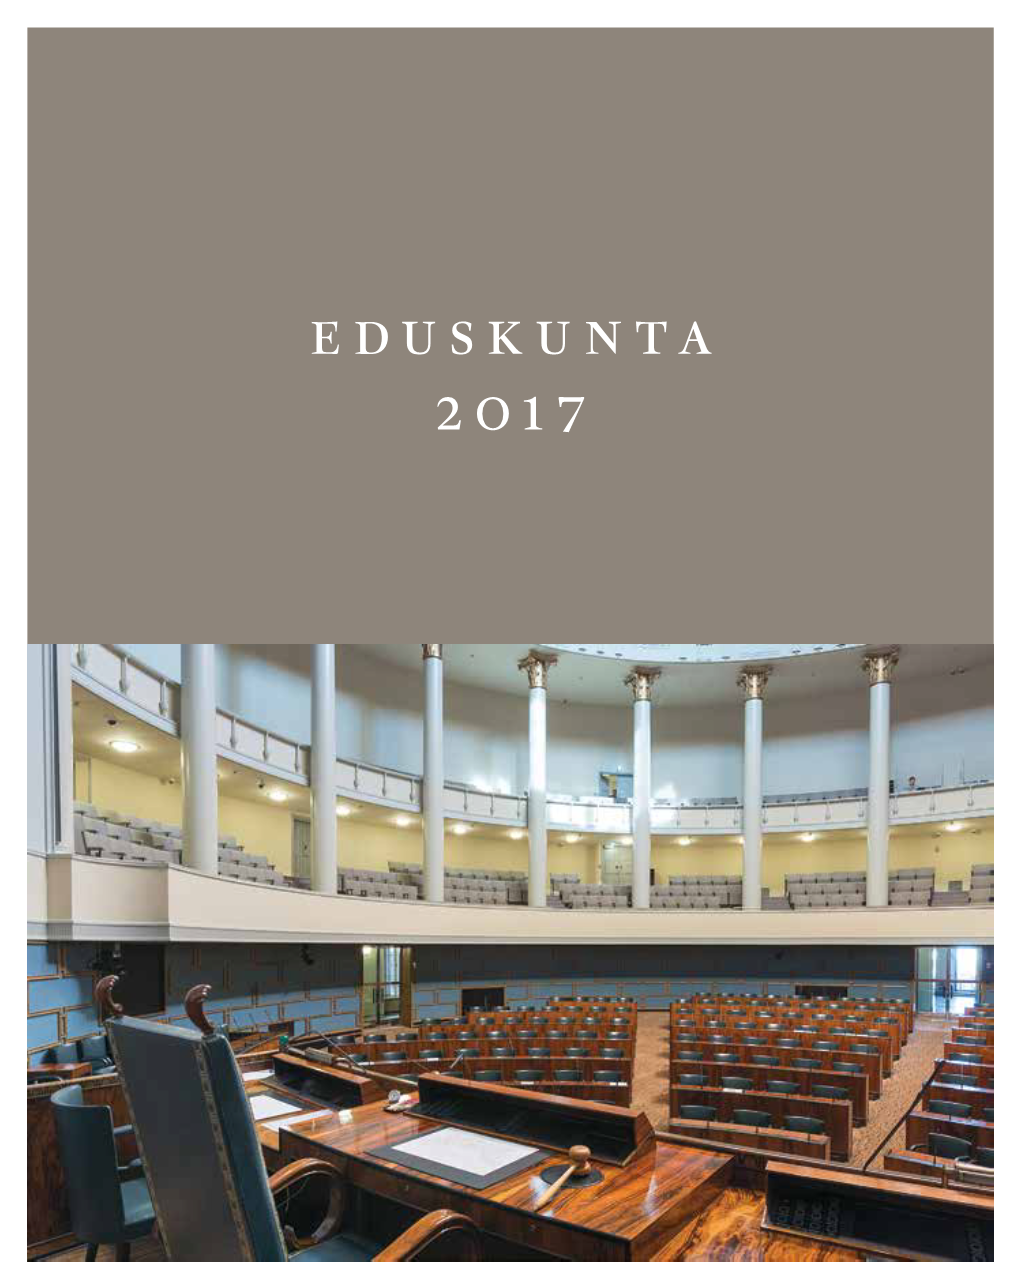 Eduskunta 2017 Duskunta Kokoontui Vuoden 2017 Ensimmäiseen Olli Rehnille (Kesk.) Myönnettiin Vapautus Edustajan- Täysistuntoonsa 1